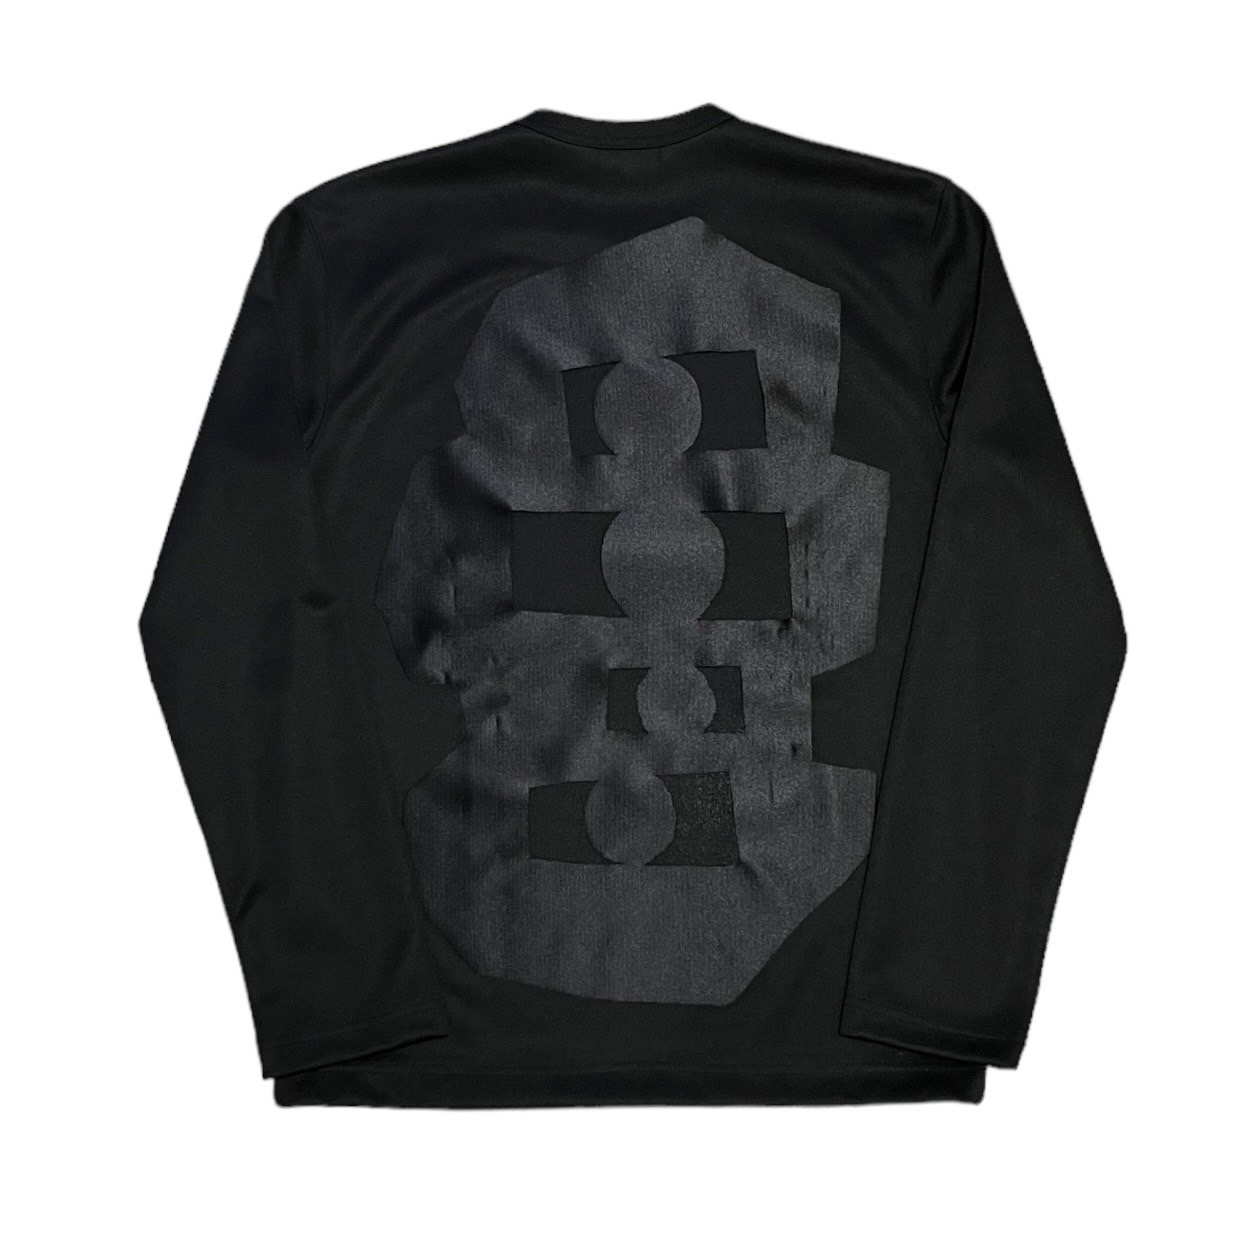 COMME des GARCONS HOMME PLUS 14AW Cutout design long sleeve T-shirts 買取金額 3,900円